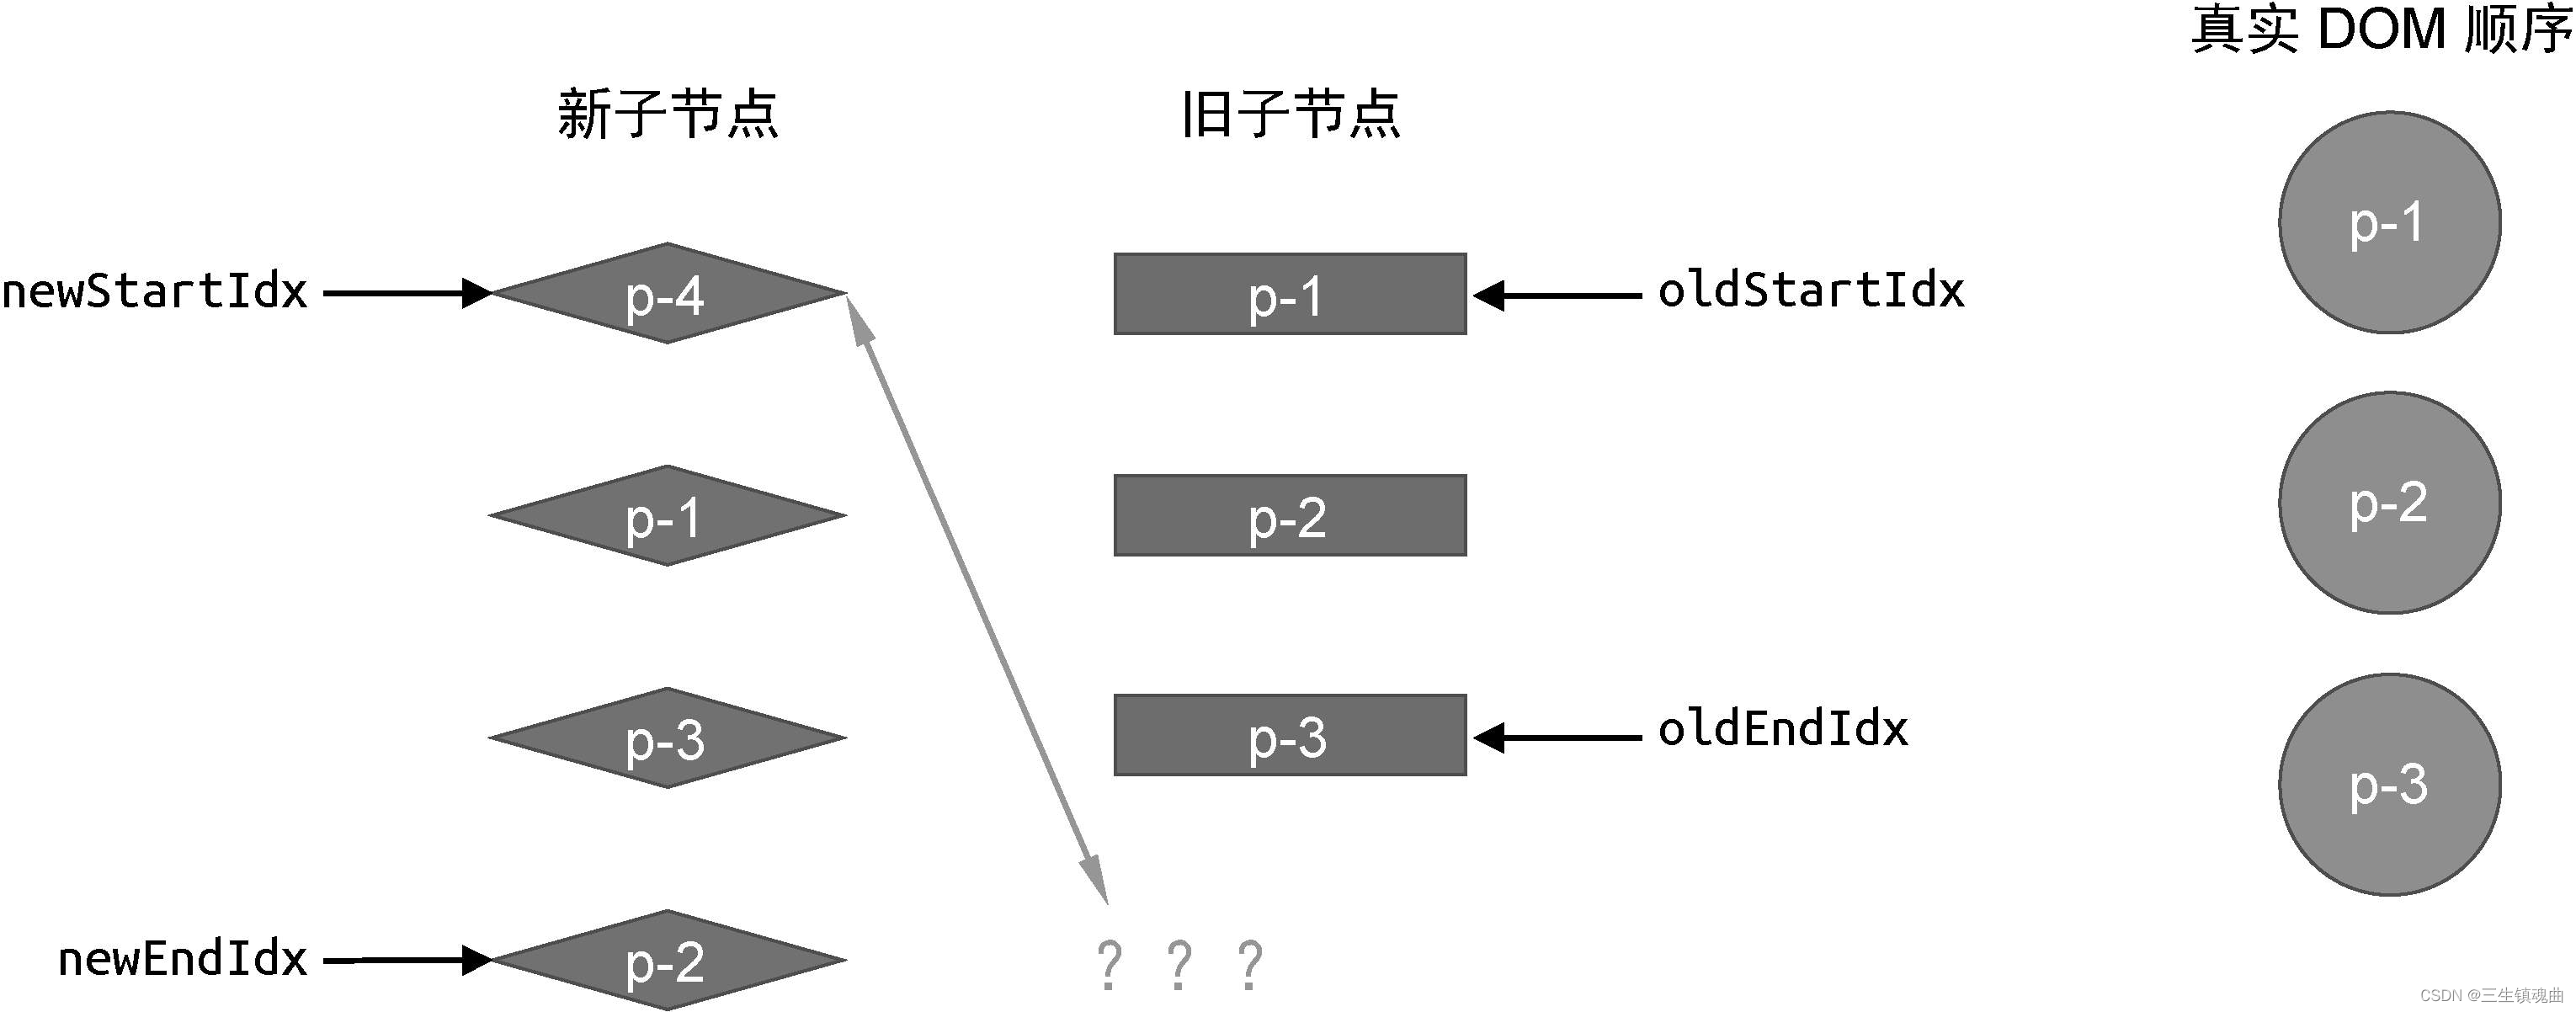 图10-26 在旧的一组子节点中找不到可复用的节点